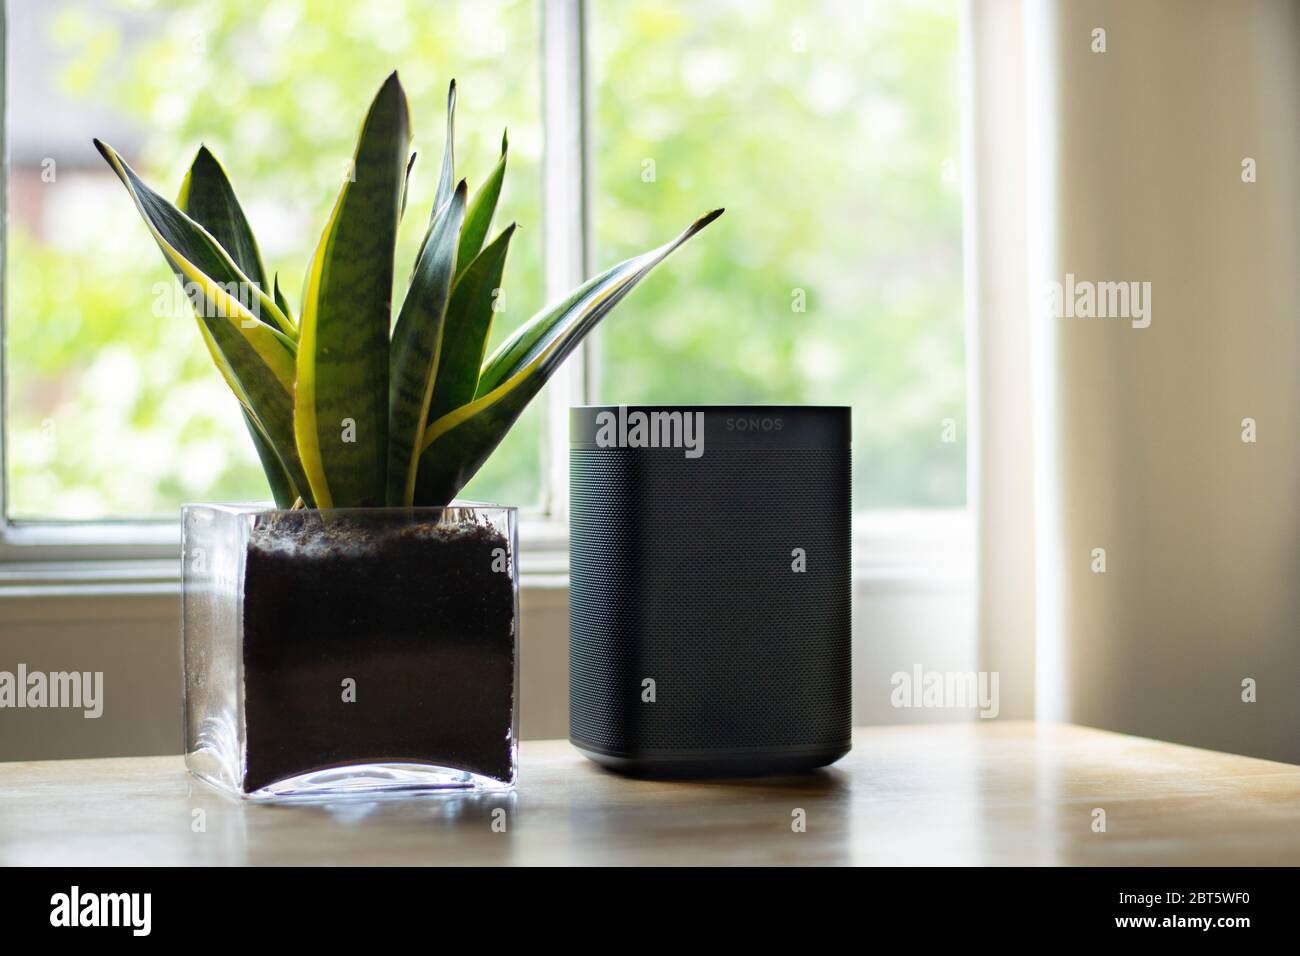 Londres, Royaume-Uni - Mai 09 2020: Un haut-parleur Sonos placé à côté d'une usine dans une belle maison. Banque D'Images